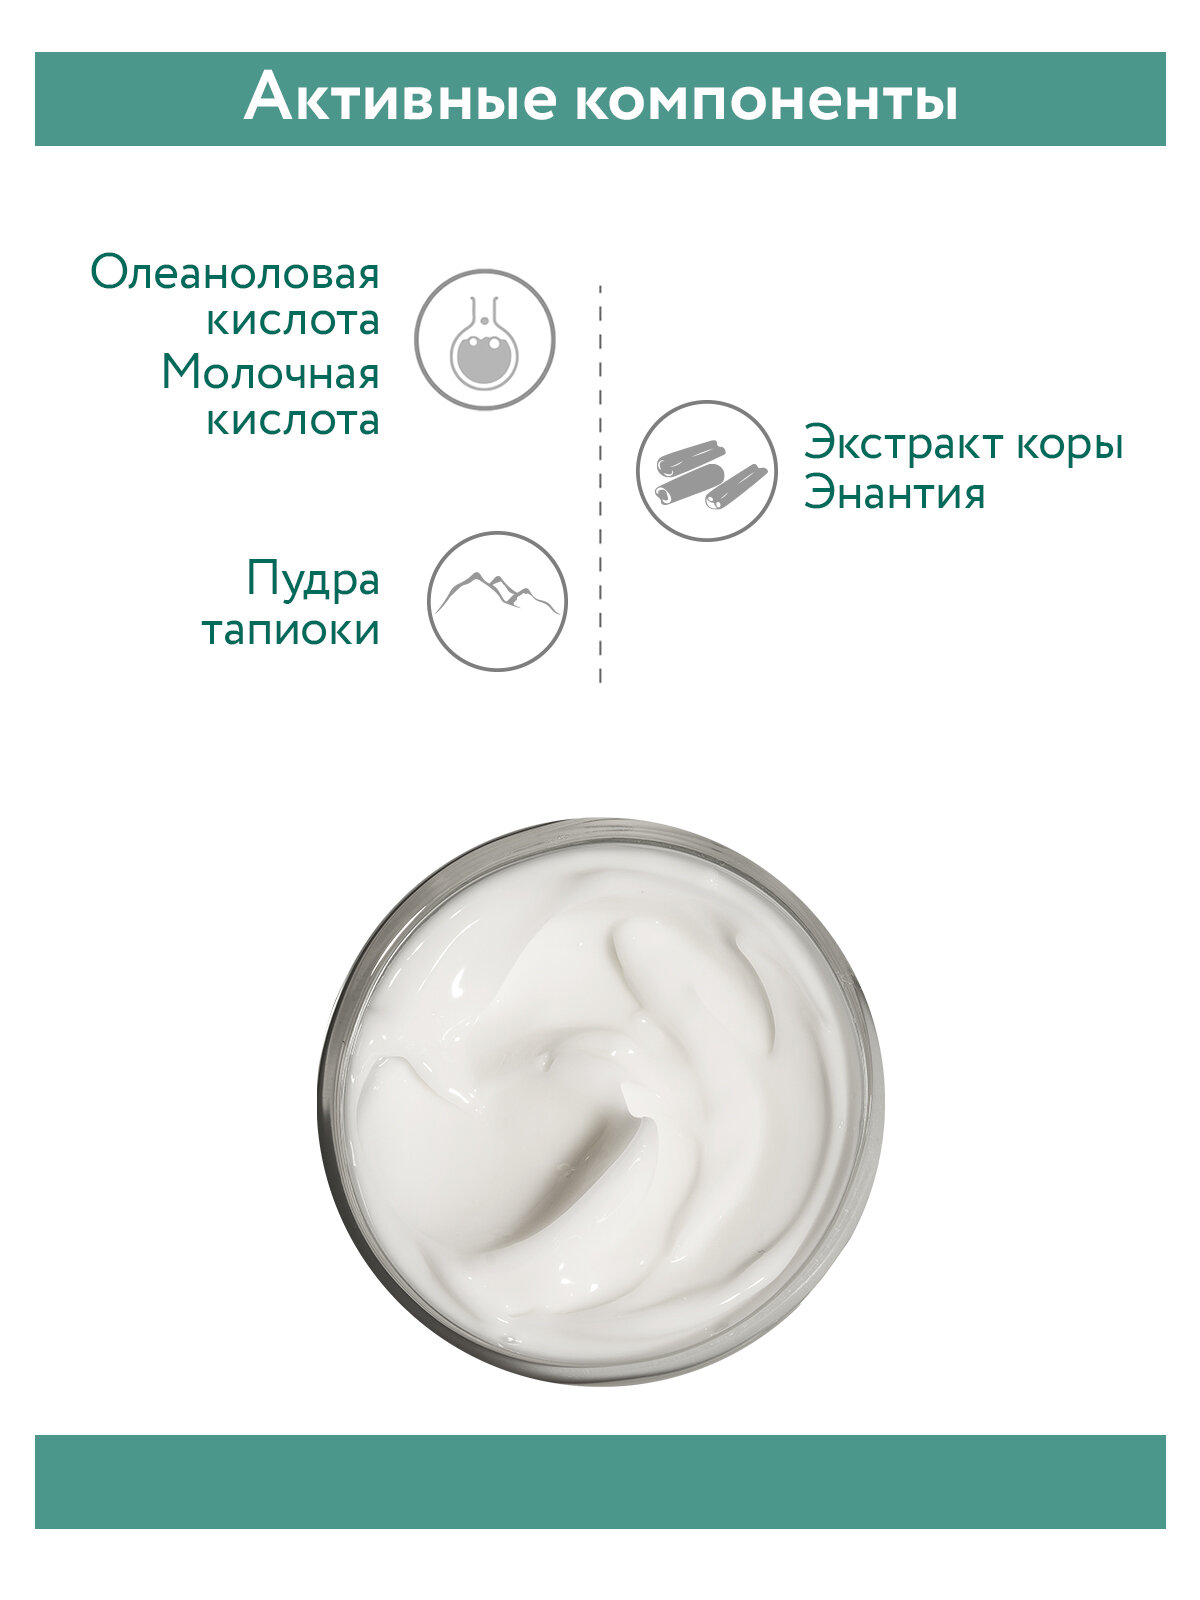 ARAVIA Крем для лица балансирующий с матирующим эффектом Balancing Mat Cream, 100 мл